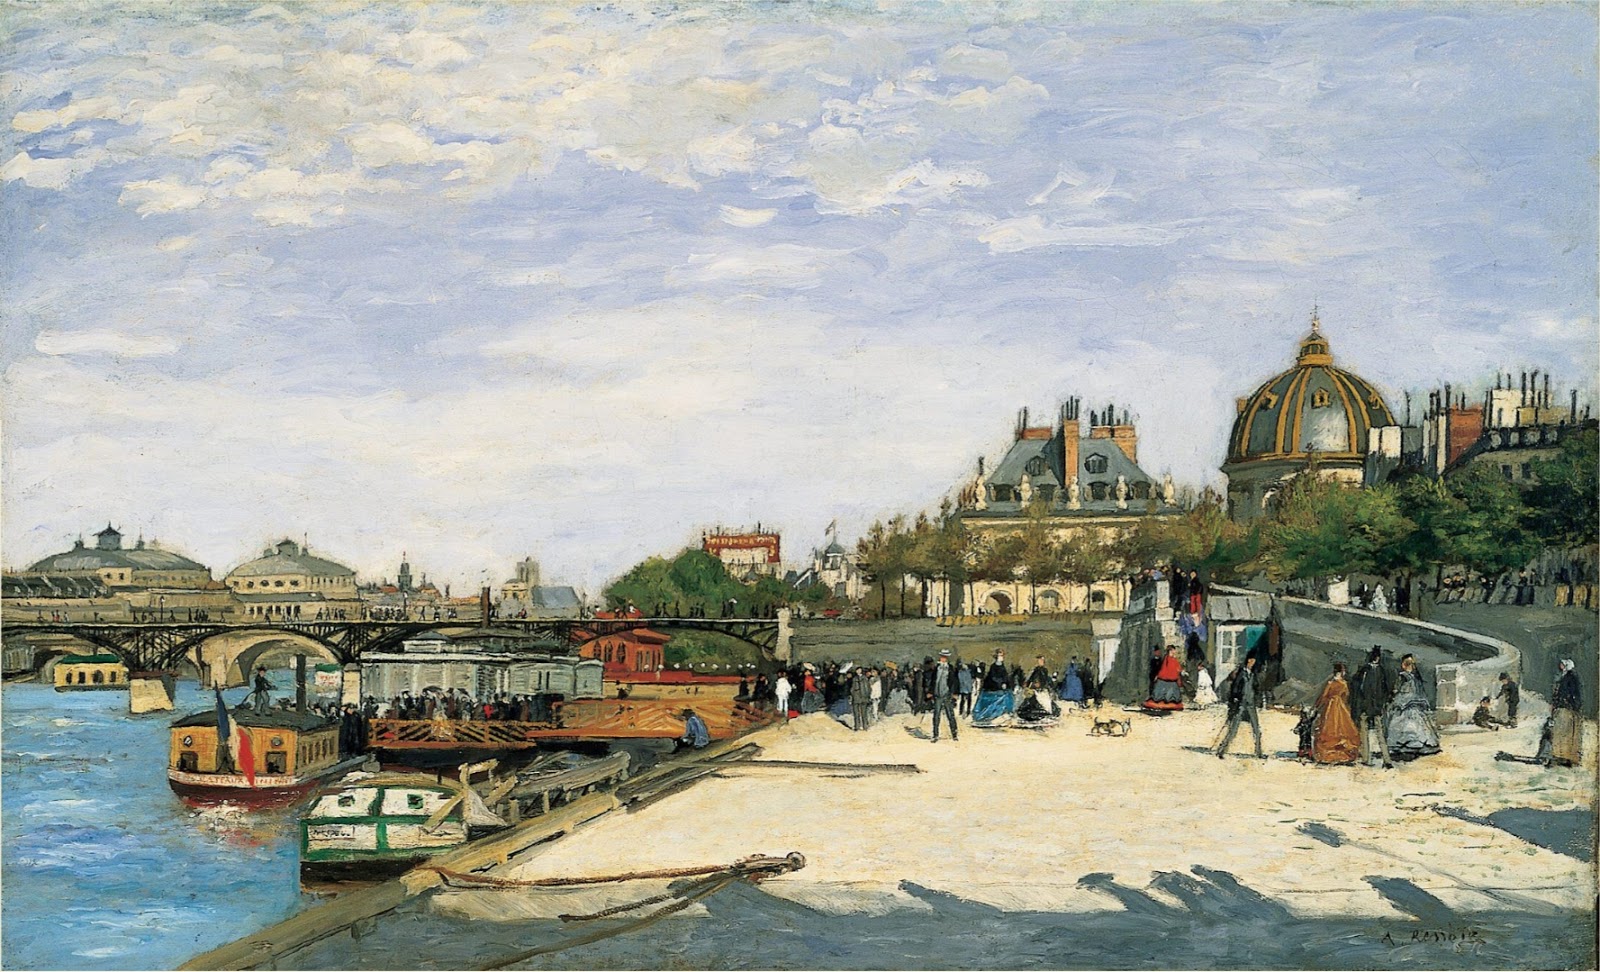 Pierre+Auguste+Renoir-1841-1-19 (307).jpg